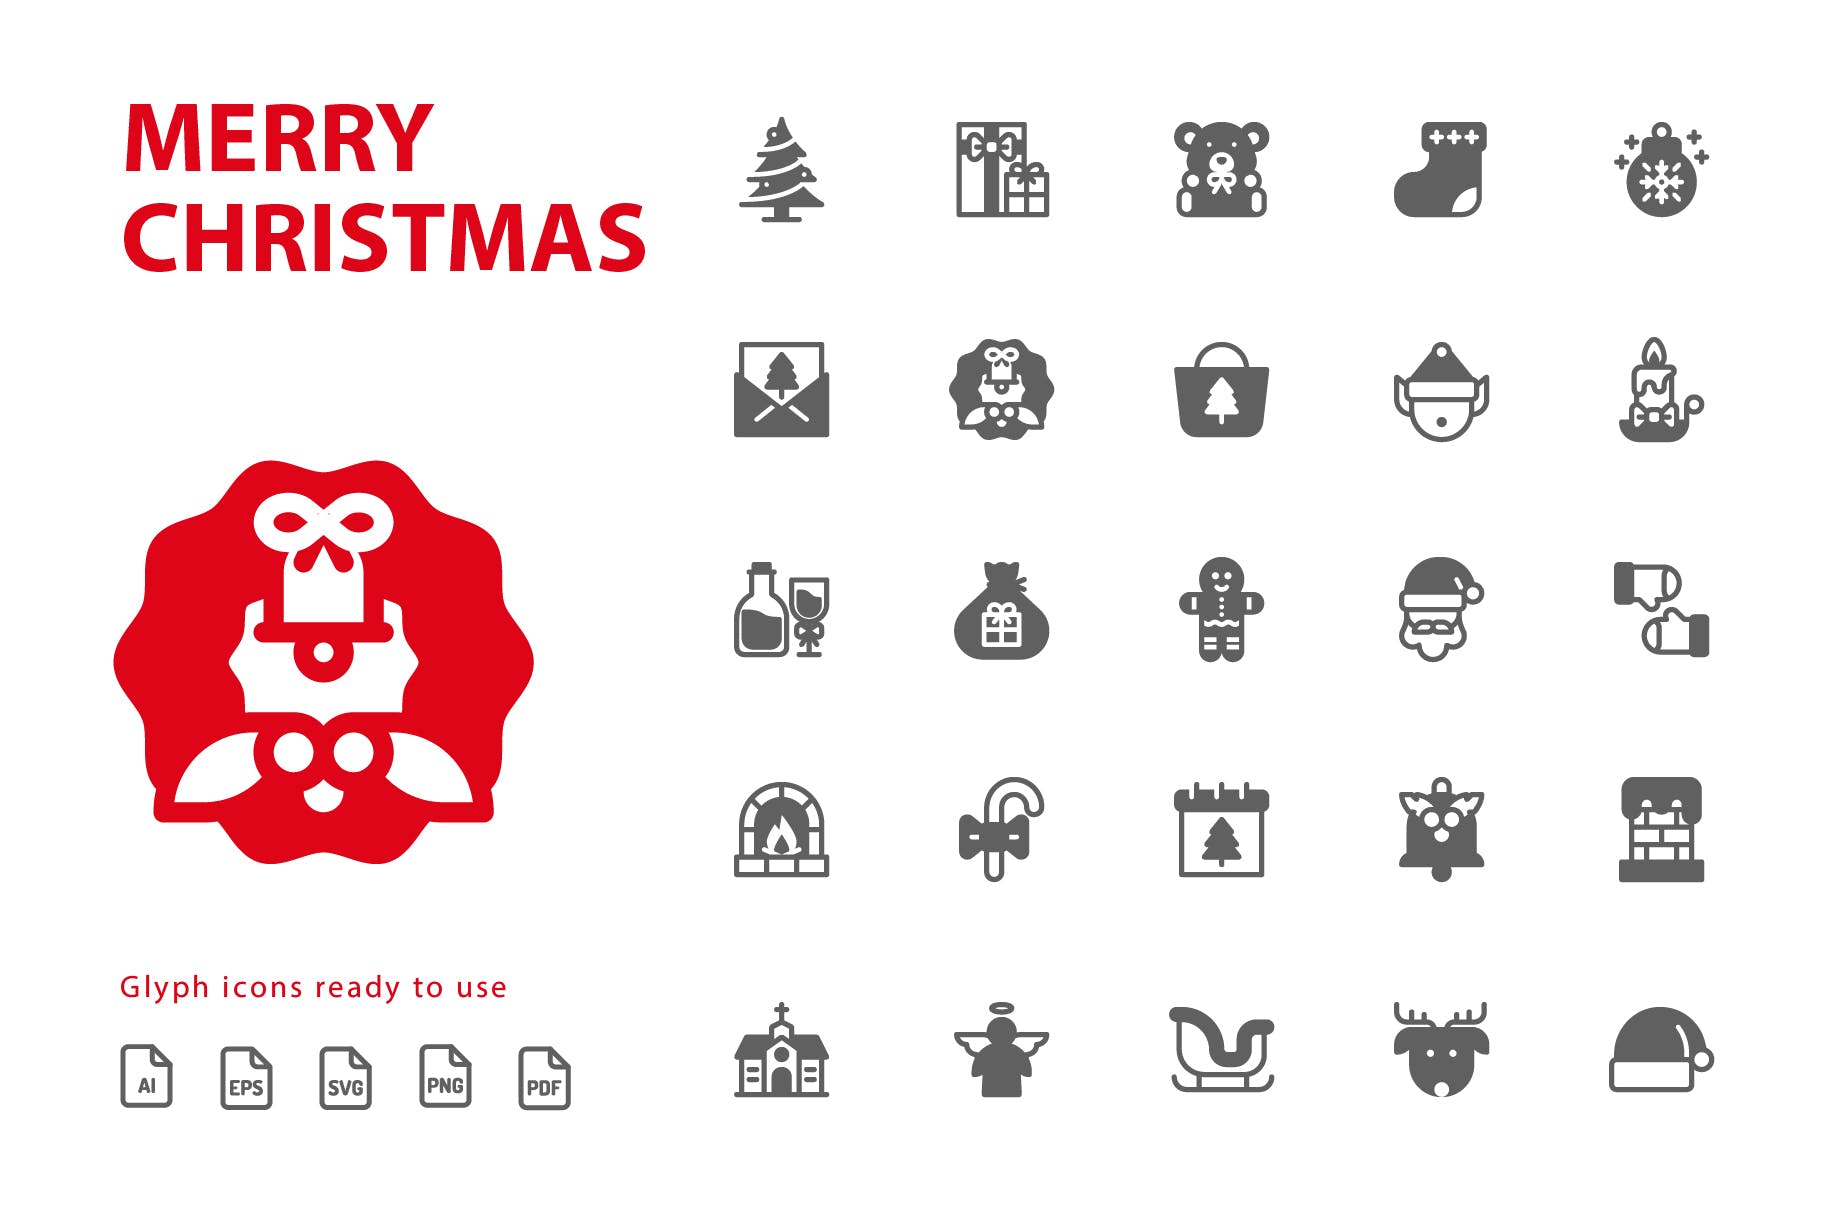 25枚圣诞节主题字体图标素材 Merry Christmas Glyph插图(1)